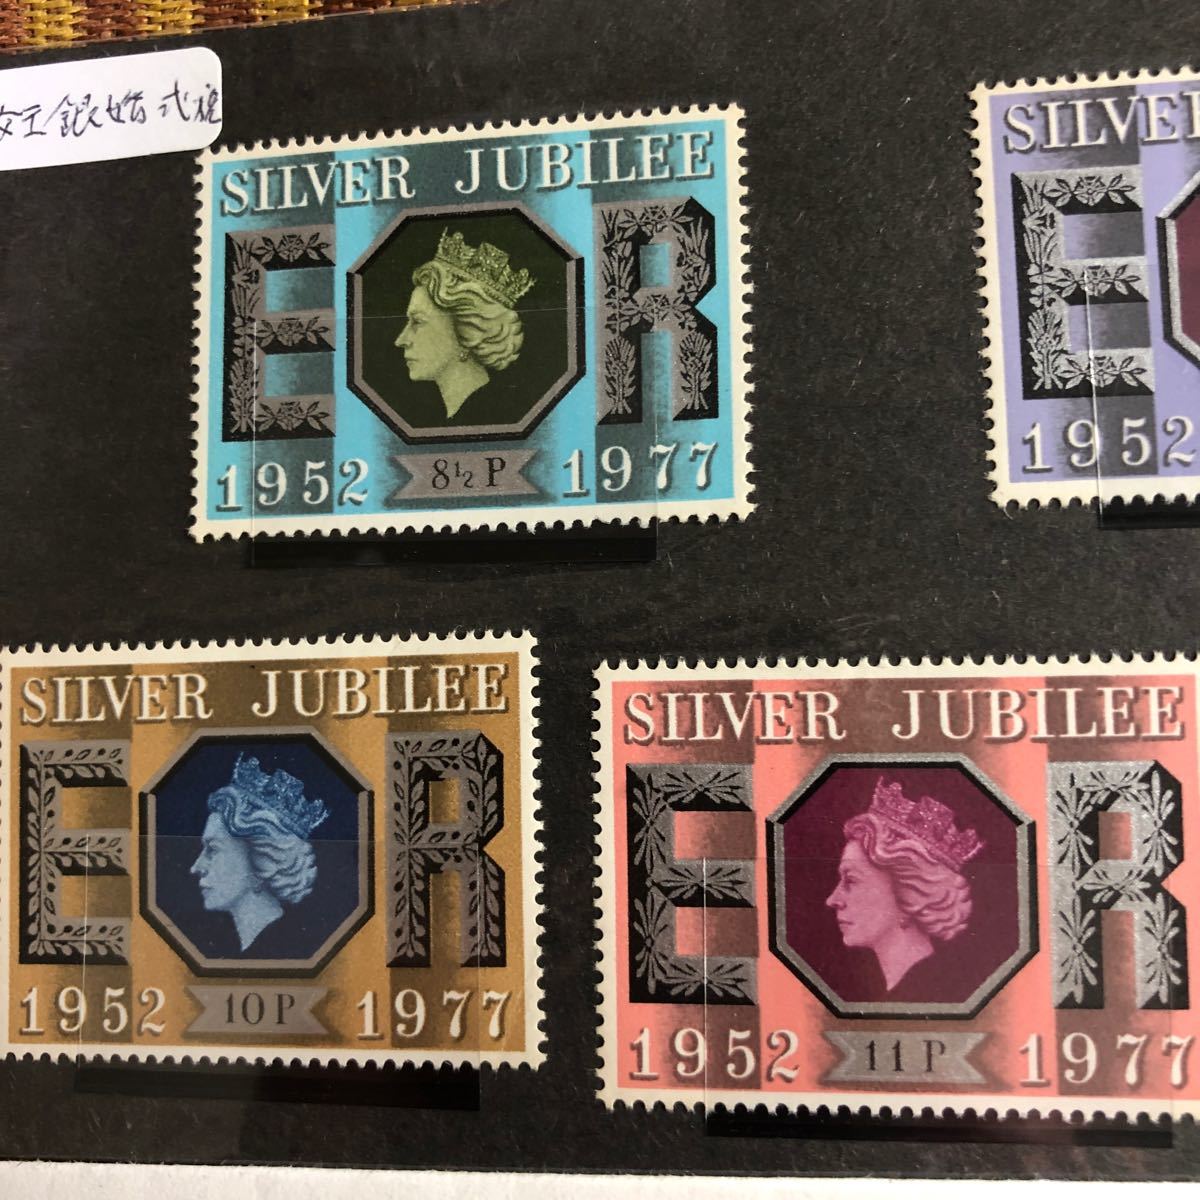 1977年エリザベス2世銀婚式記念切手5種、記念初日カバー、在位25年記念硬貨